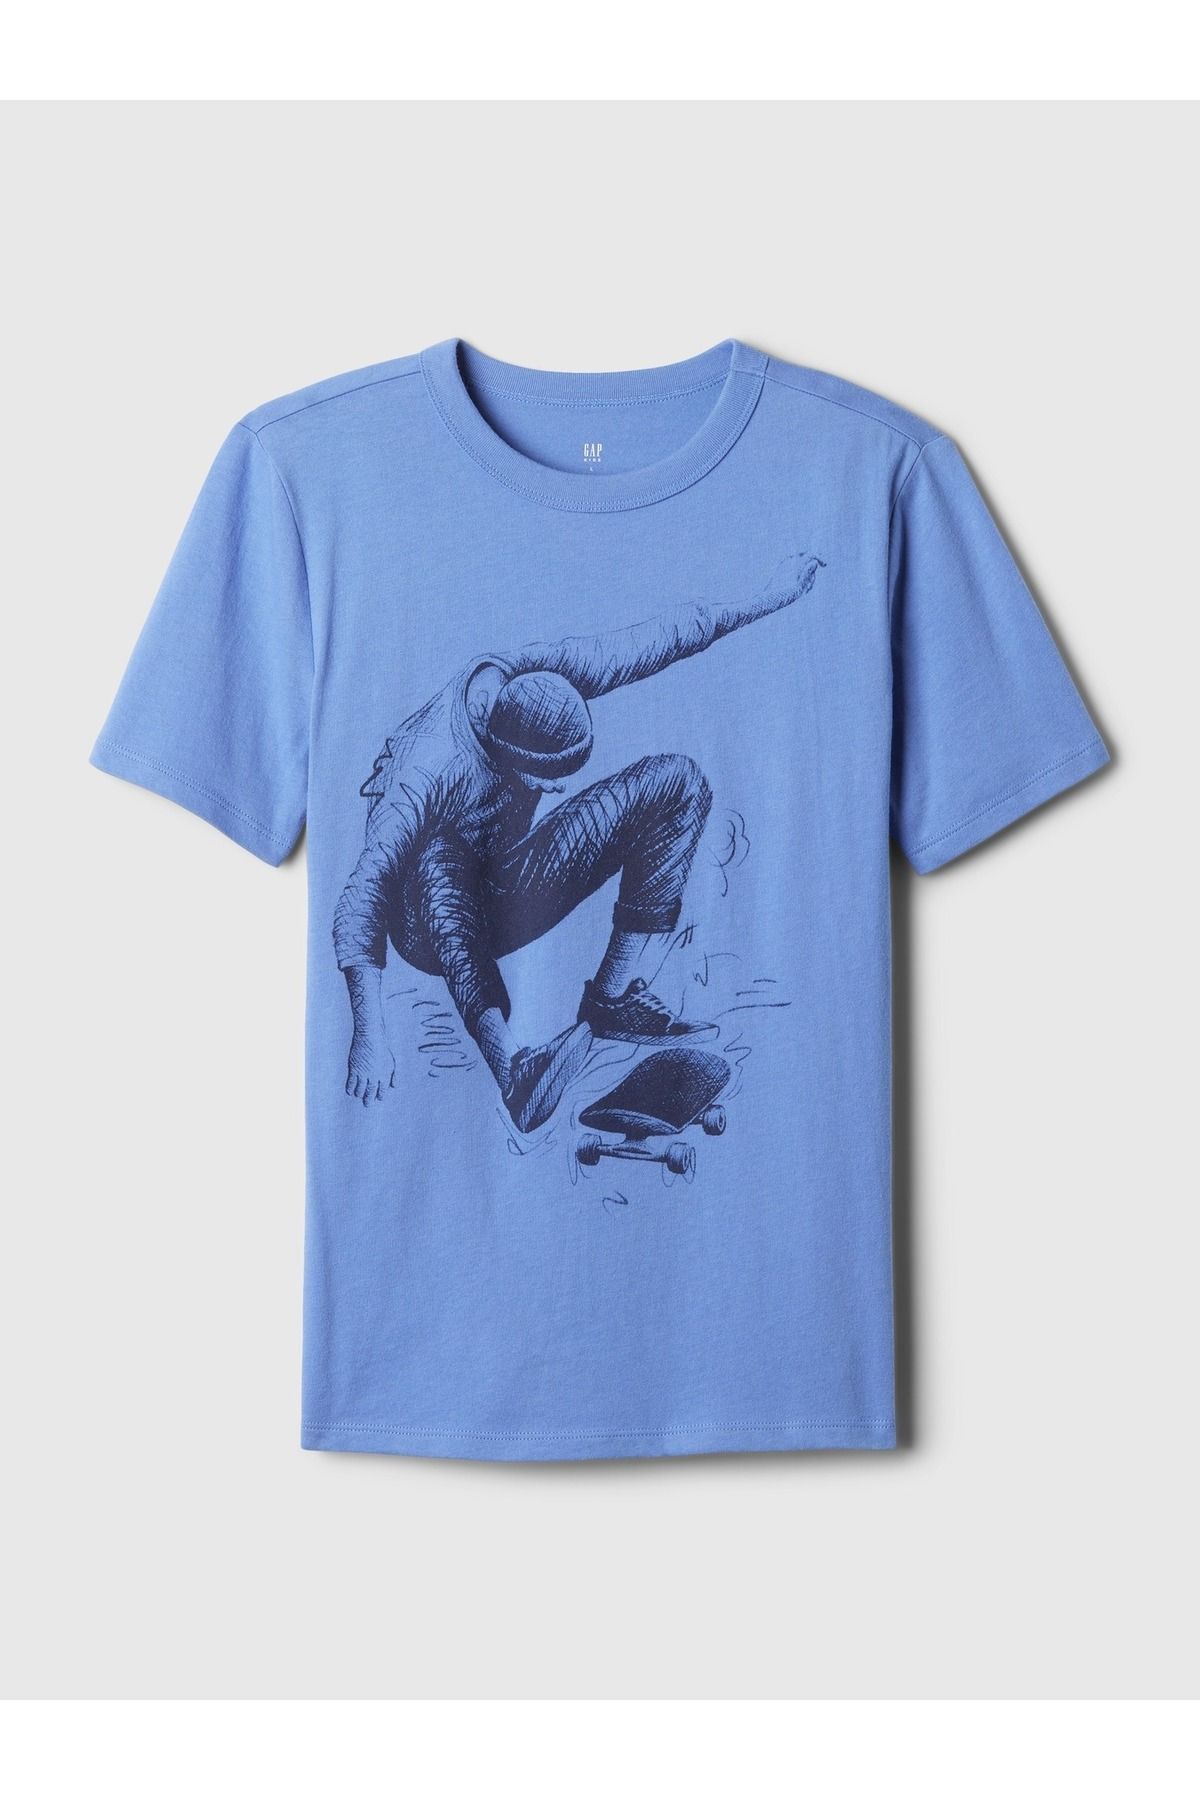 GAP Erkek Çocuk Mavi Grafikli T-Shirt